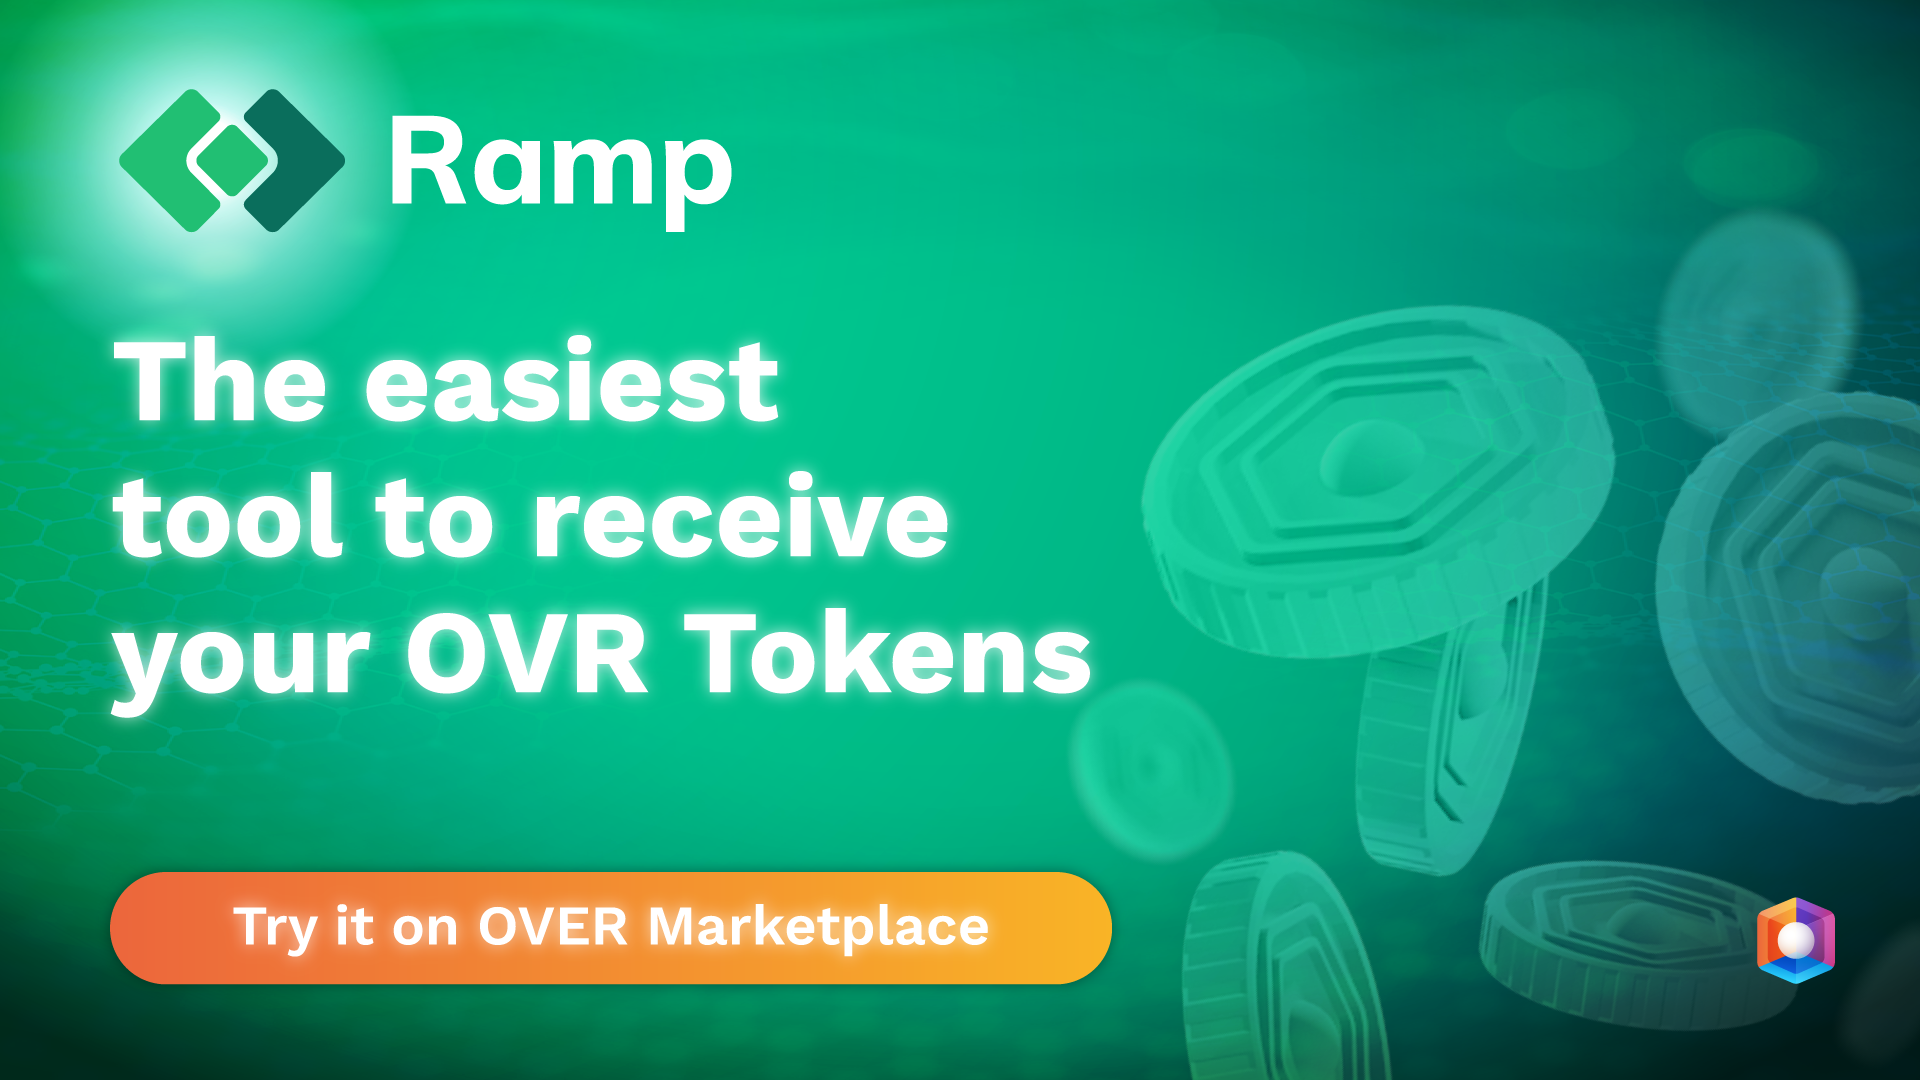 Acheter des jetons OVR devient encore plus facile avec RAMP!